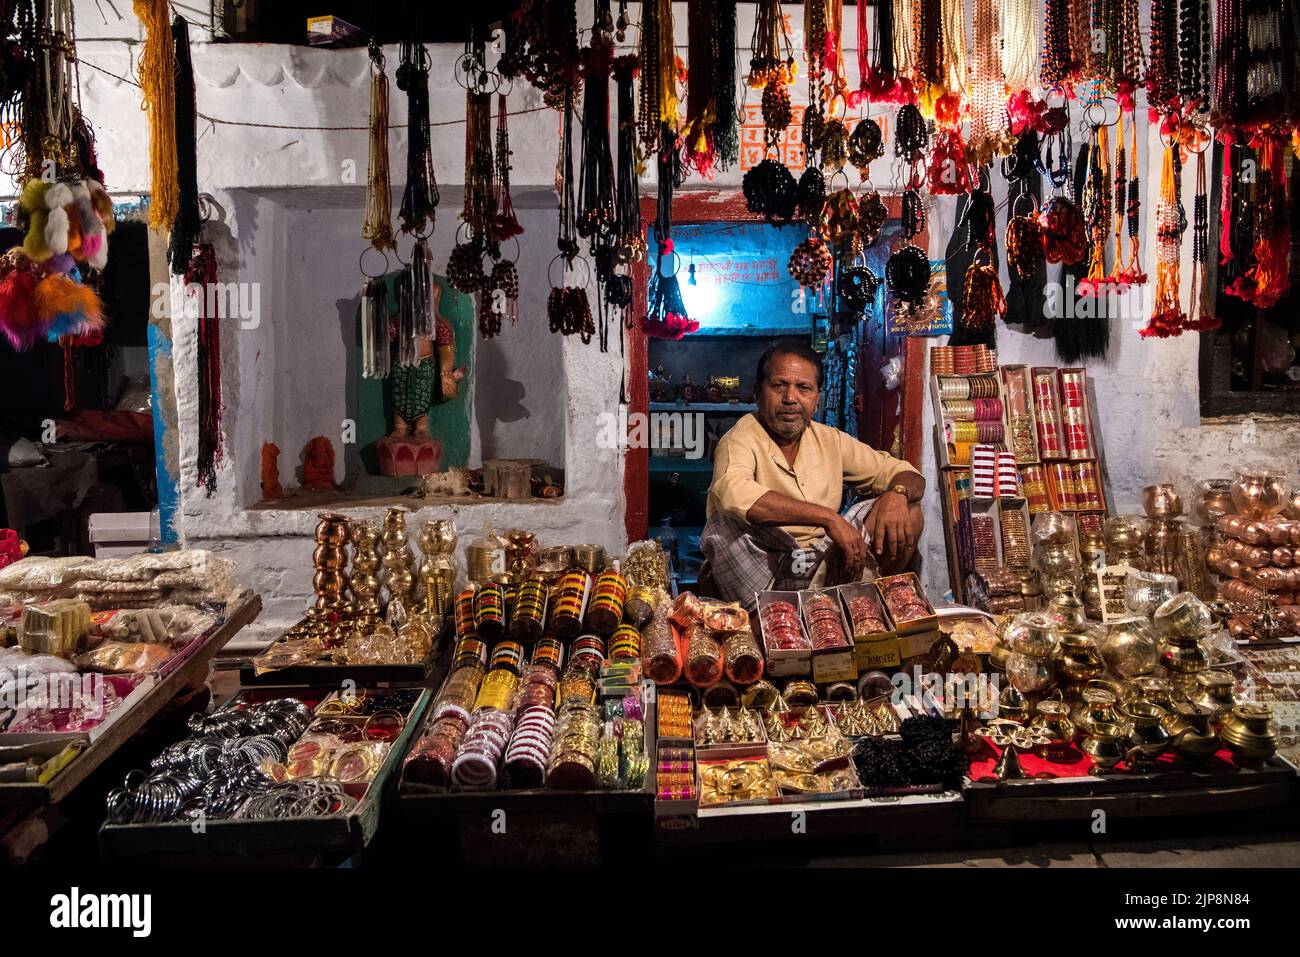 Shop selling religious items, Varanasi, Banaras, Benaras, Kashi, Uttar Pradesh, India Stock Photo